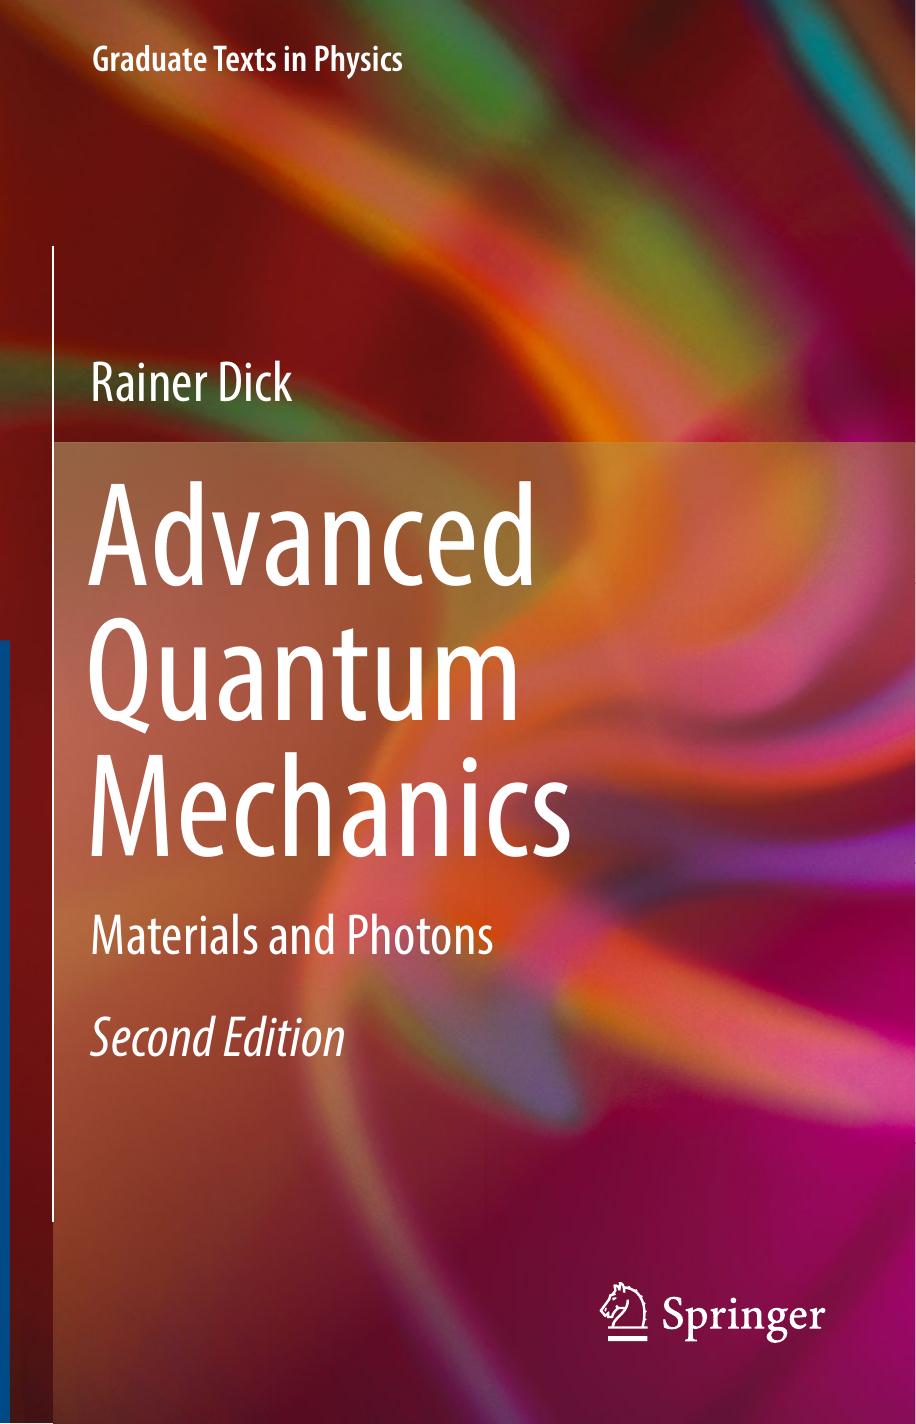 Advanced Quantum Mechanics by Rainer Dick